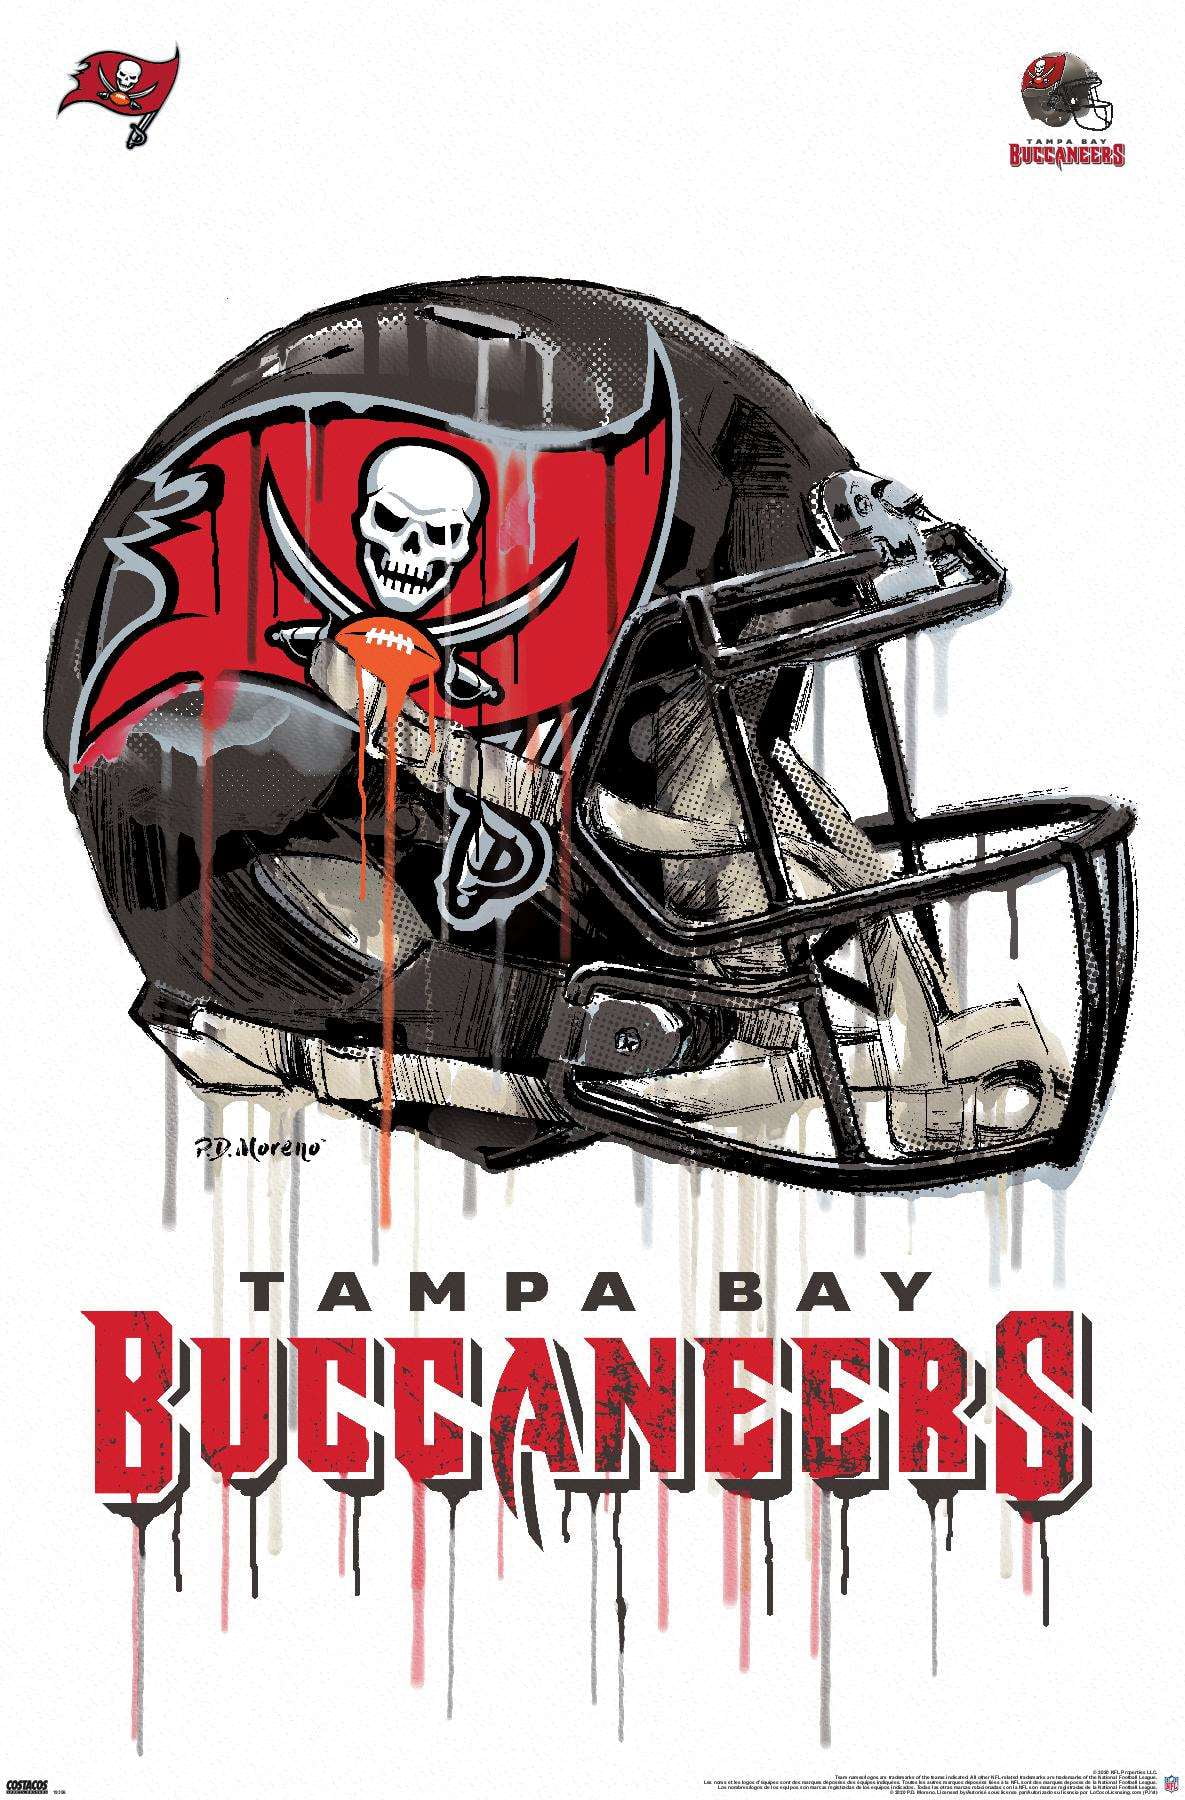 buccaneers helmet